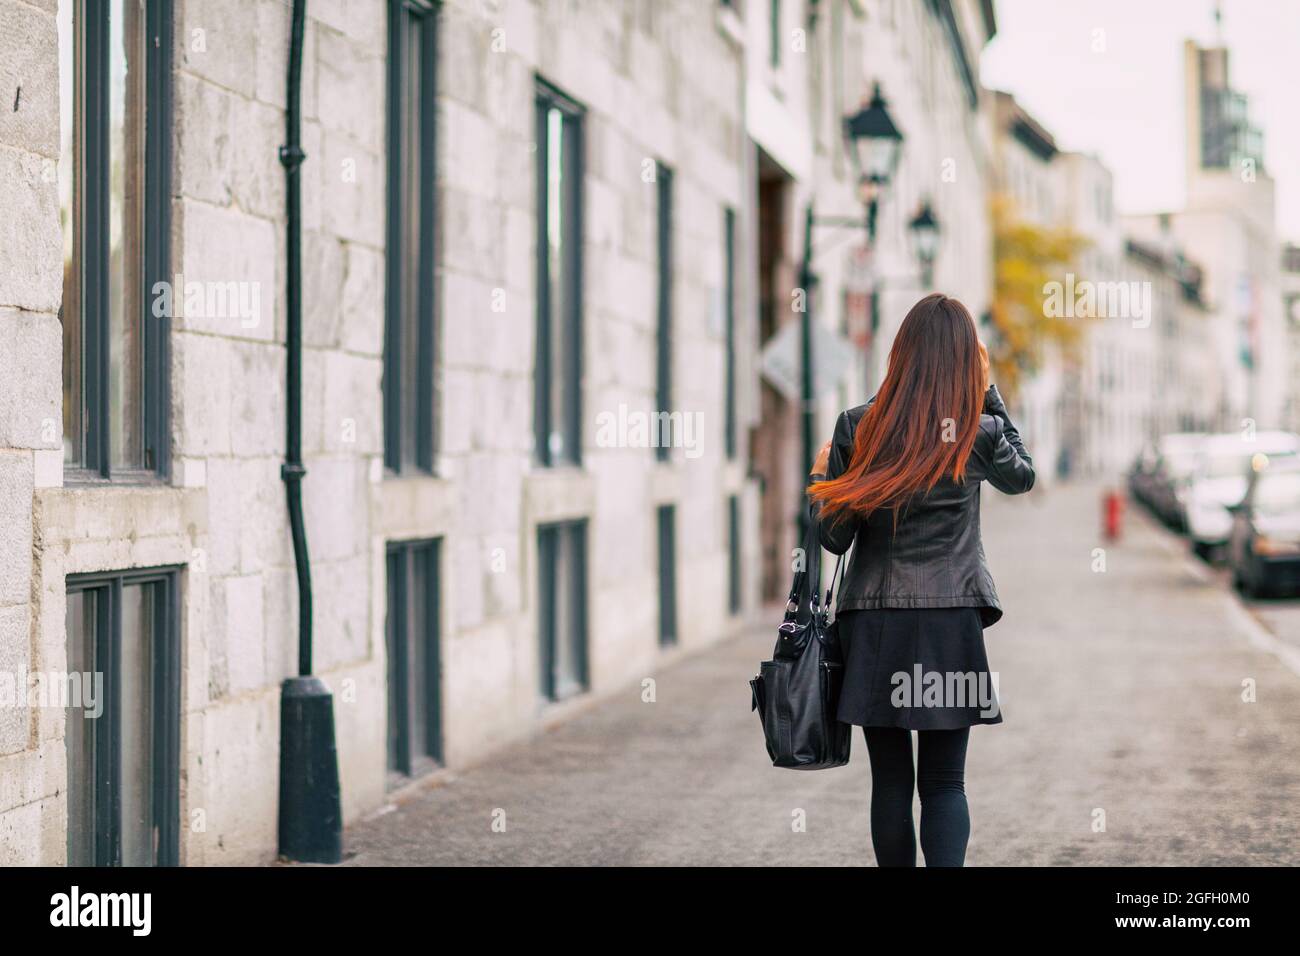 Ombre Haarfärbemittel Frau zu Fuß mit colered Ende der Haare mit helleren braunen Ton. Urban City Lifestyle junge Menschen mit gefärbter Frisur Stockfoto